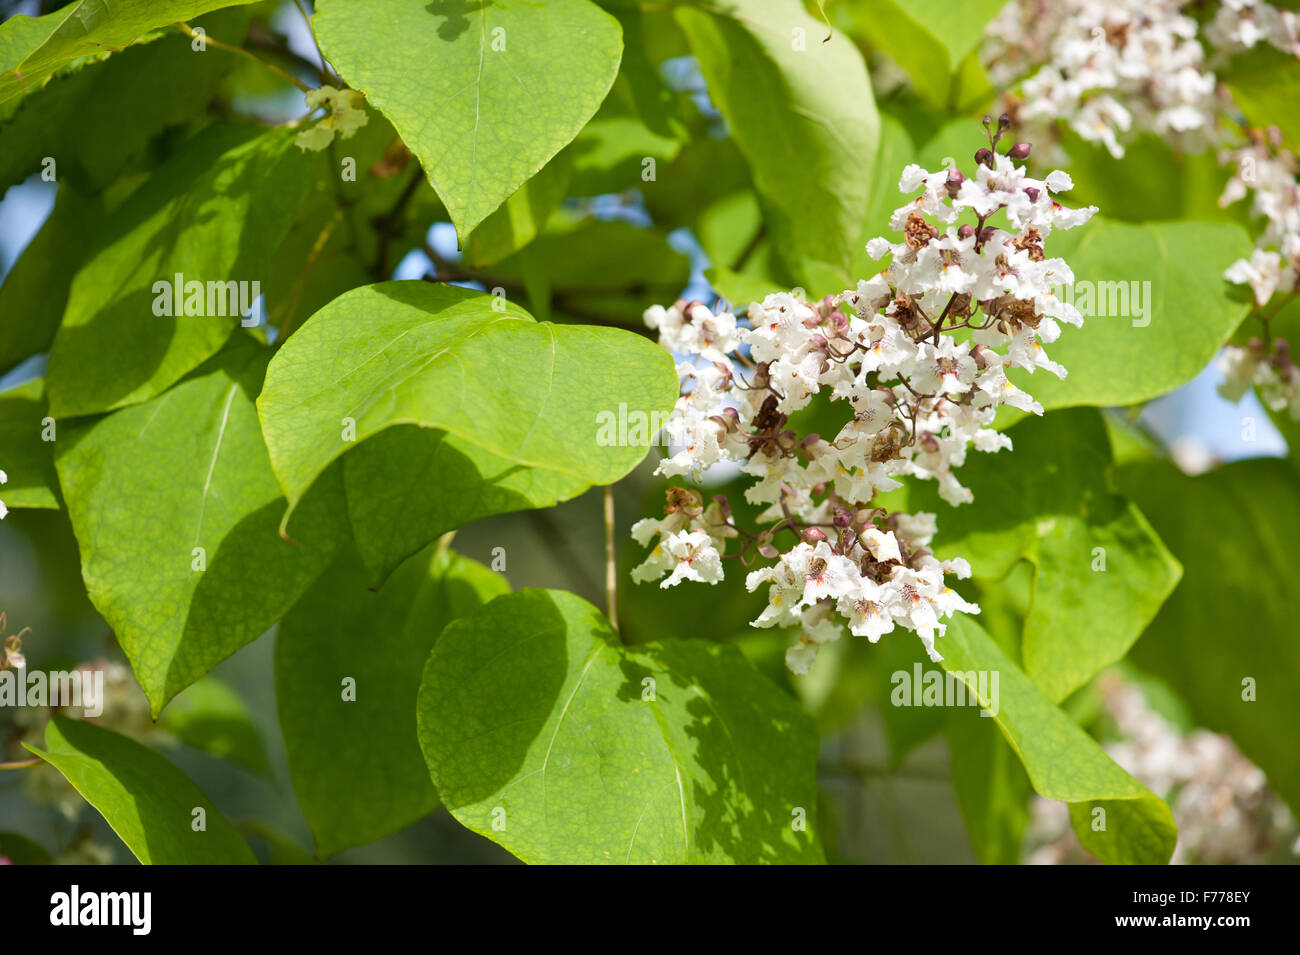 Floración Catalpa árbol caducifolio, floreciendo las inflorescencias blancas closeup, flores tubulares show en julio, planta llamada catawba crecer Foto de stock